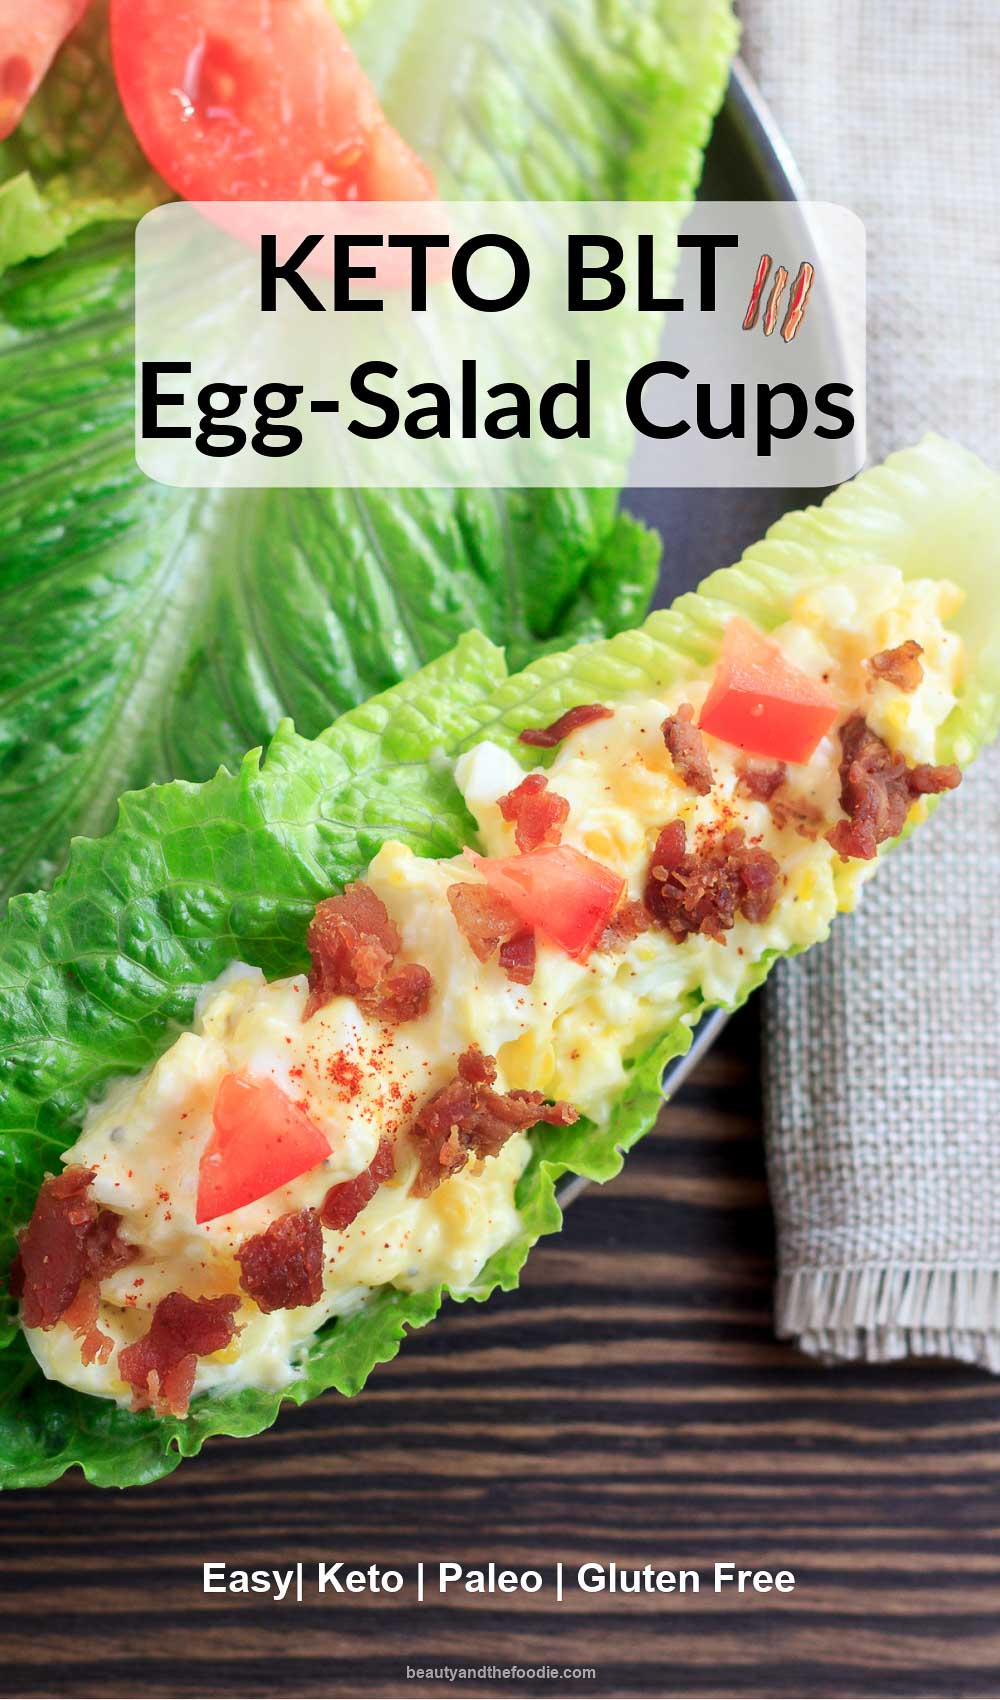 A lettuce boat filledwith BLT egg salad.